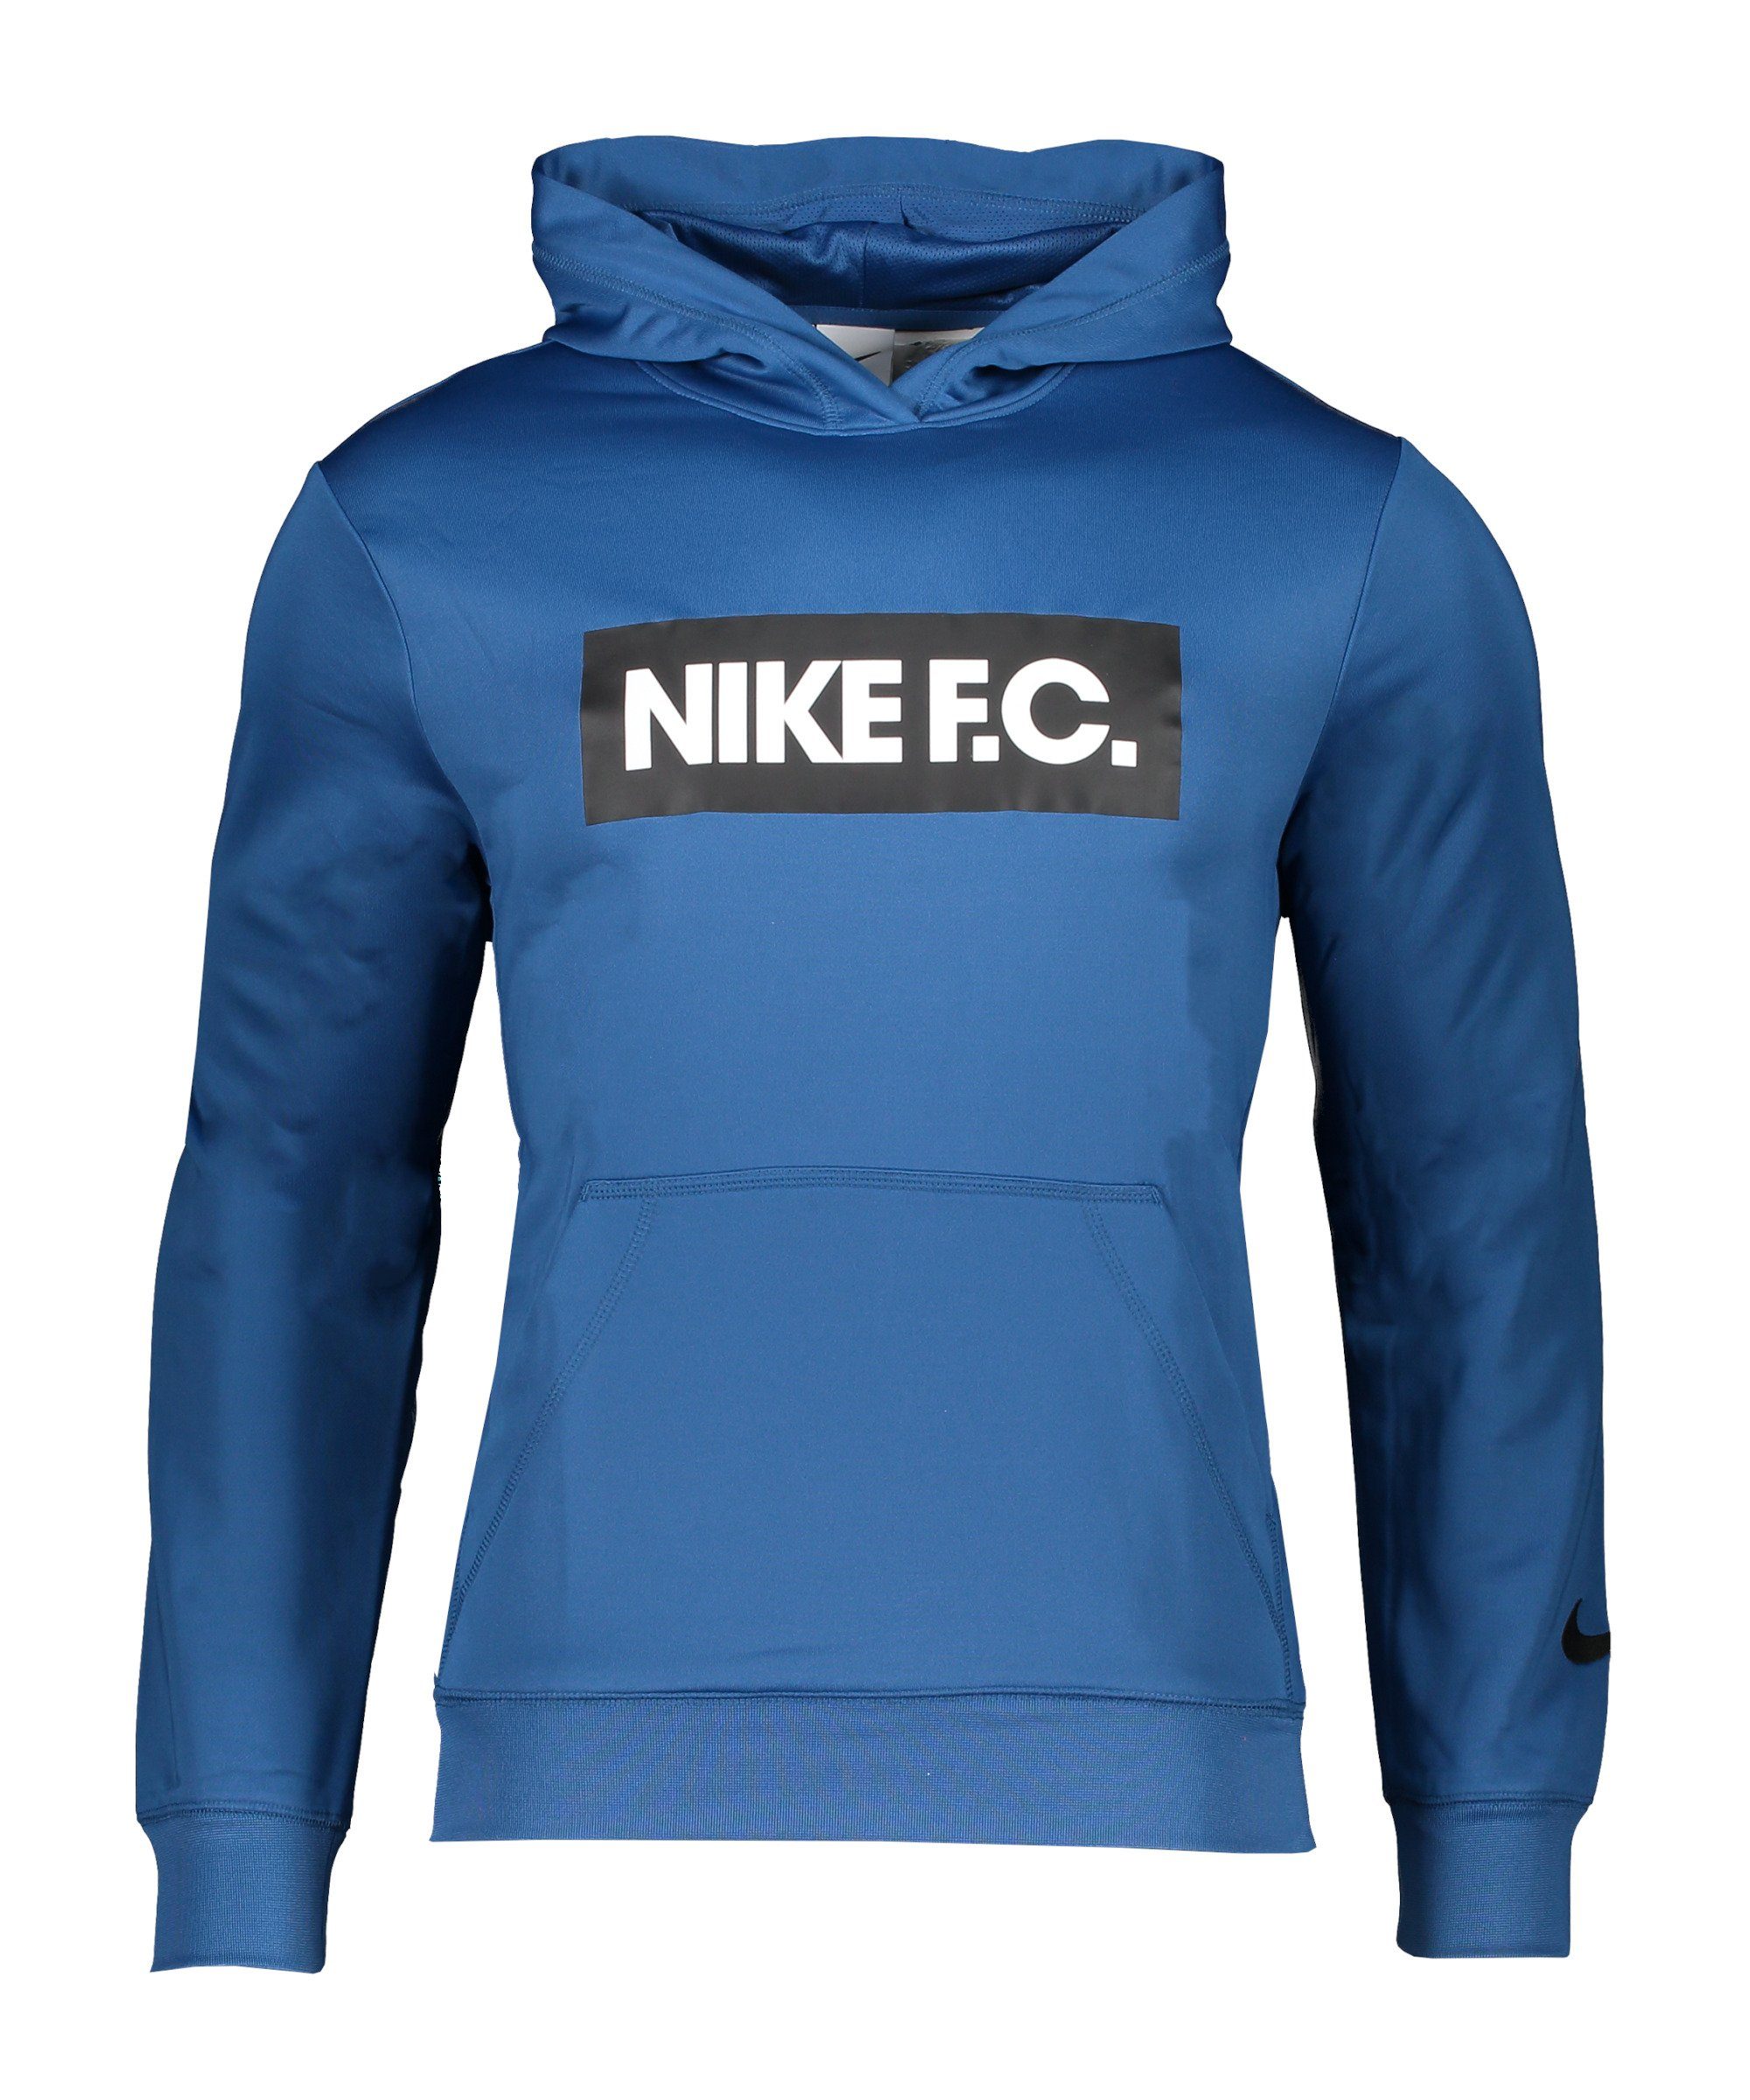 blauweissschwarz Hoody Sweatshirt Nike Sportswear F.C. Fleece